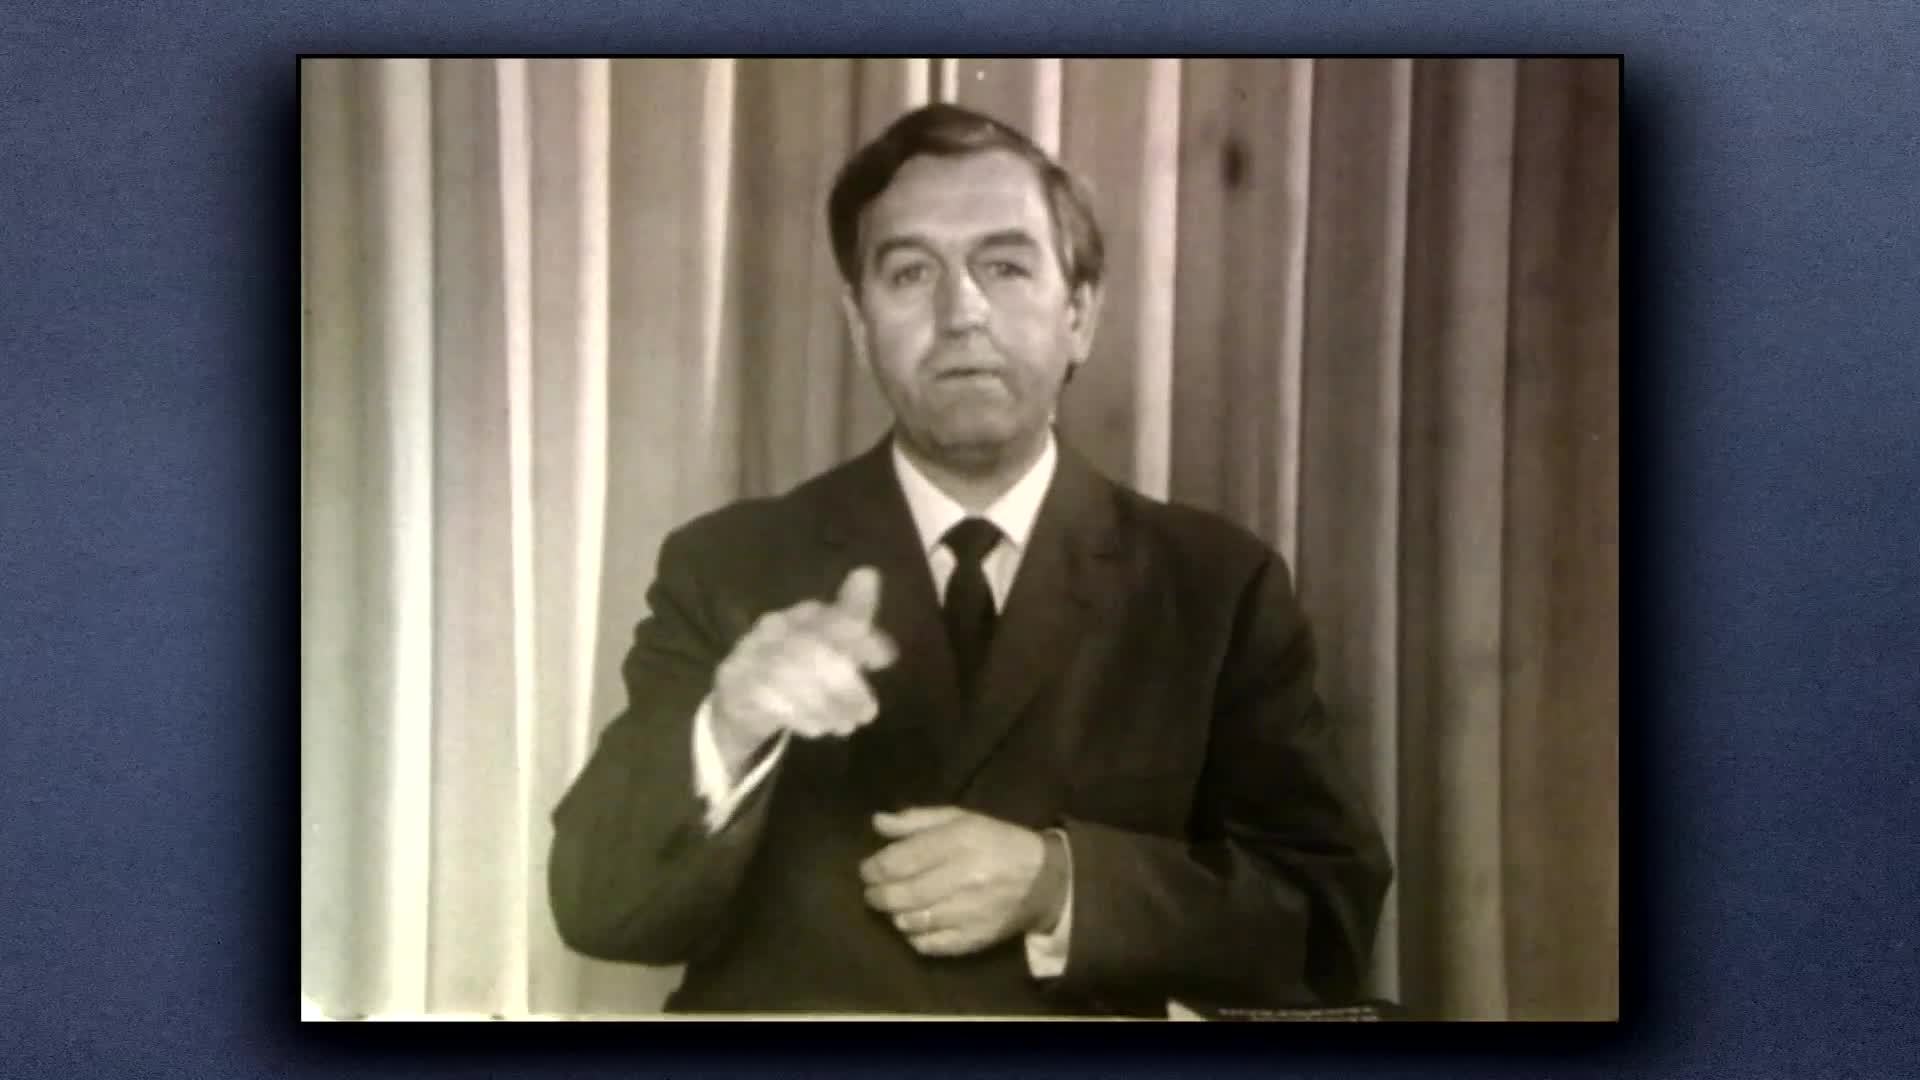 Klik for at se videoen "50 år siden, at tegnsprog kom på tv"